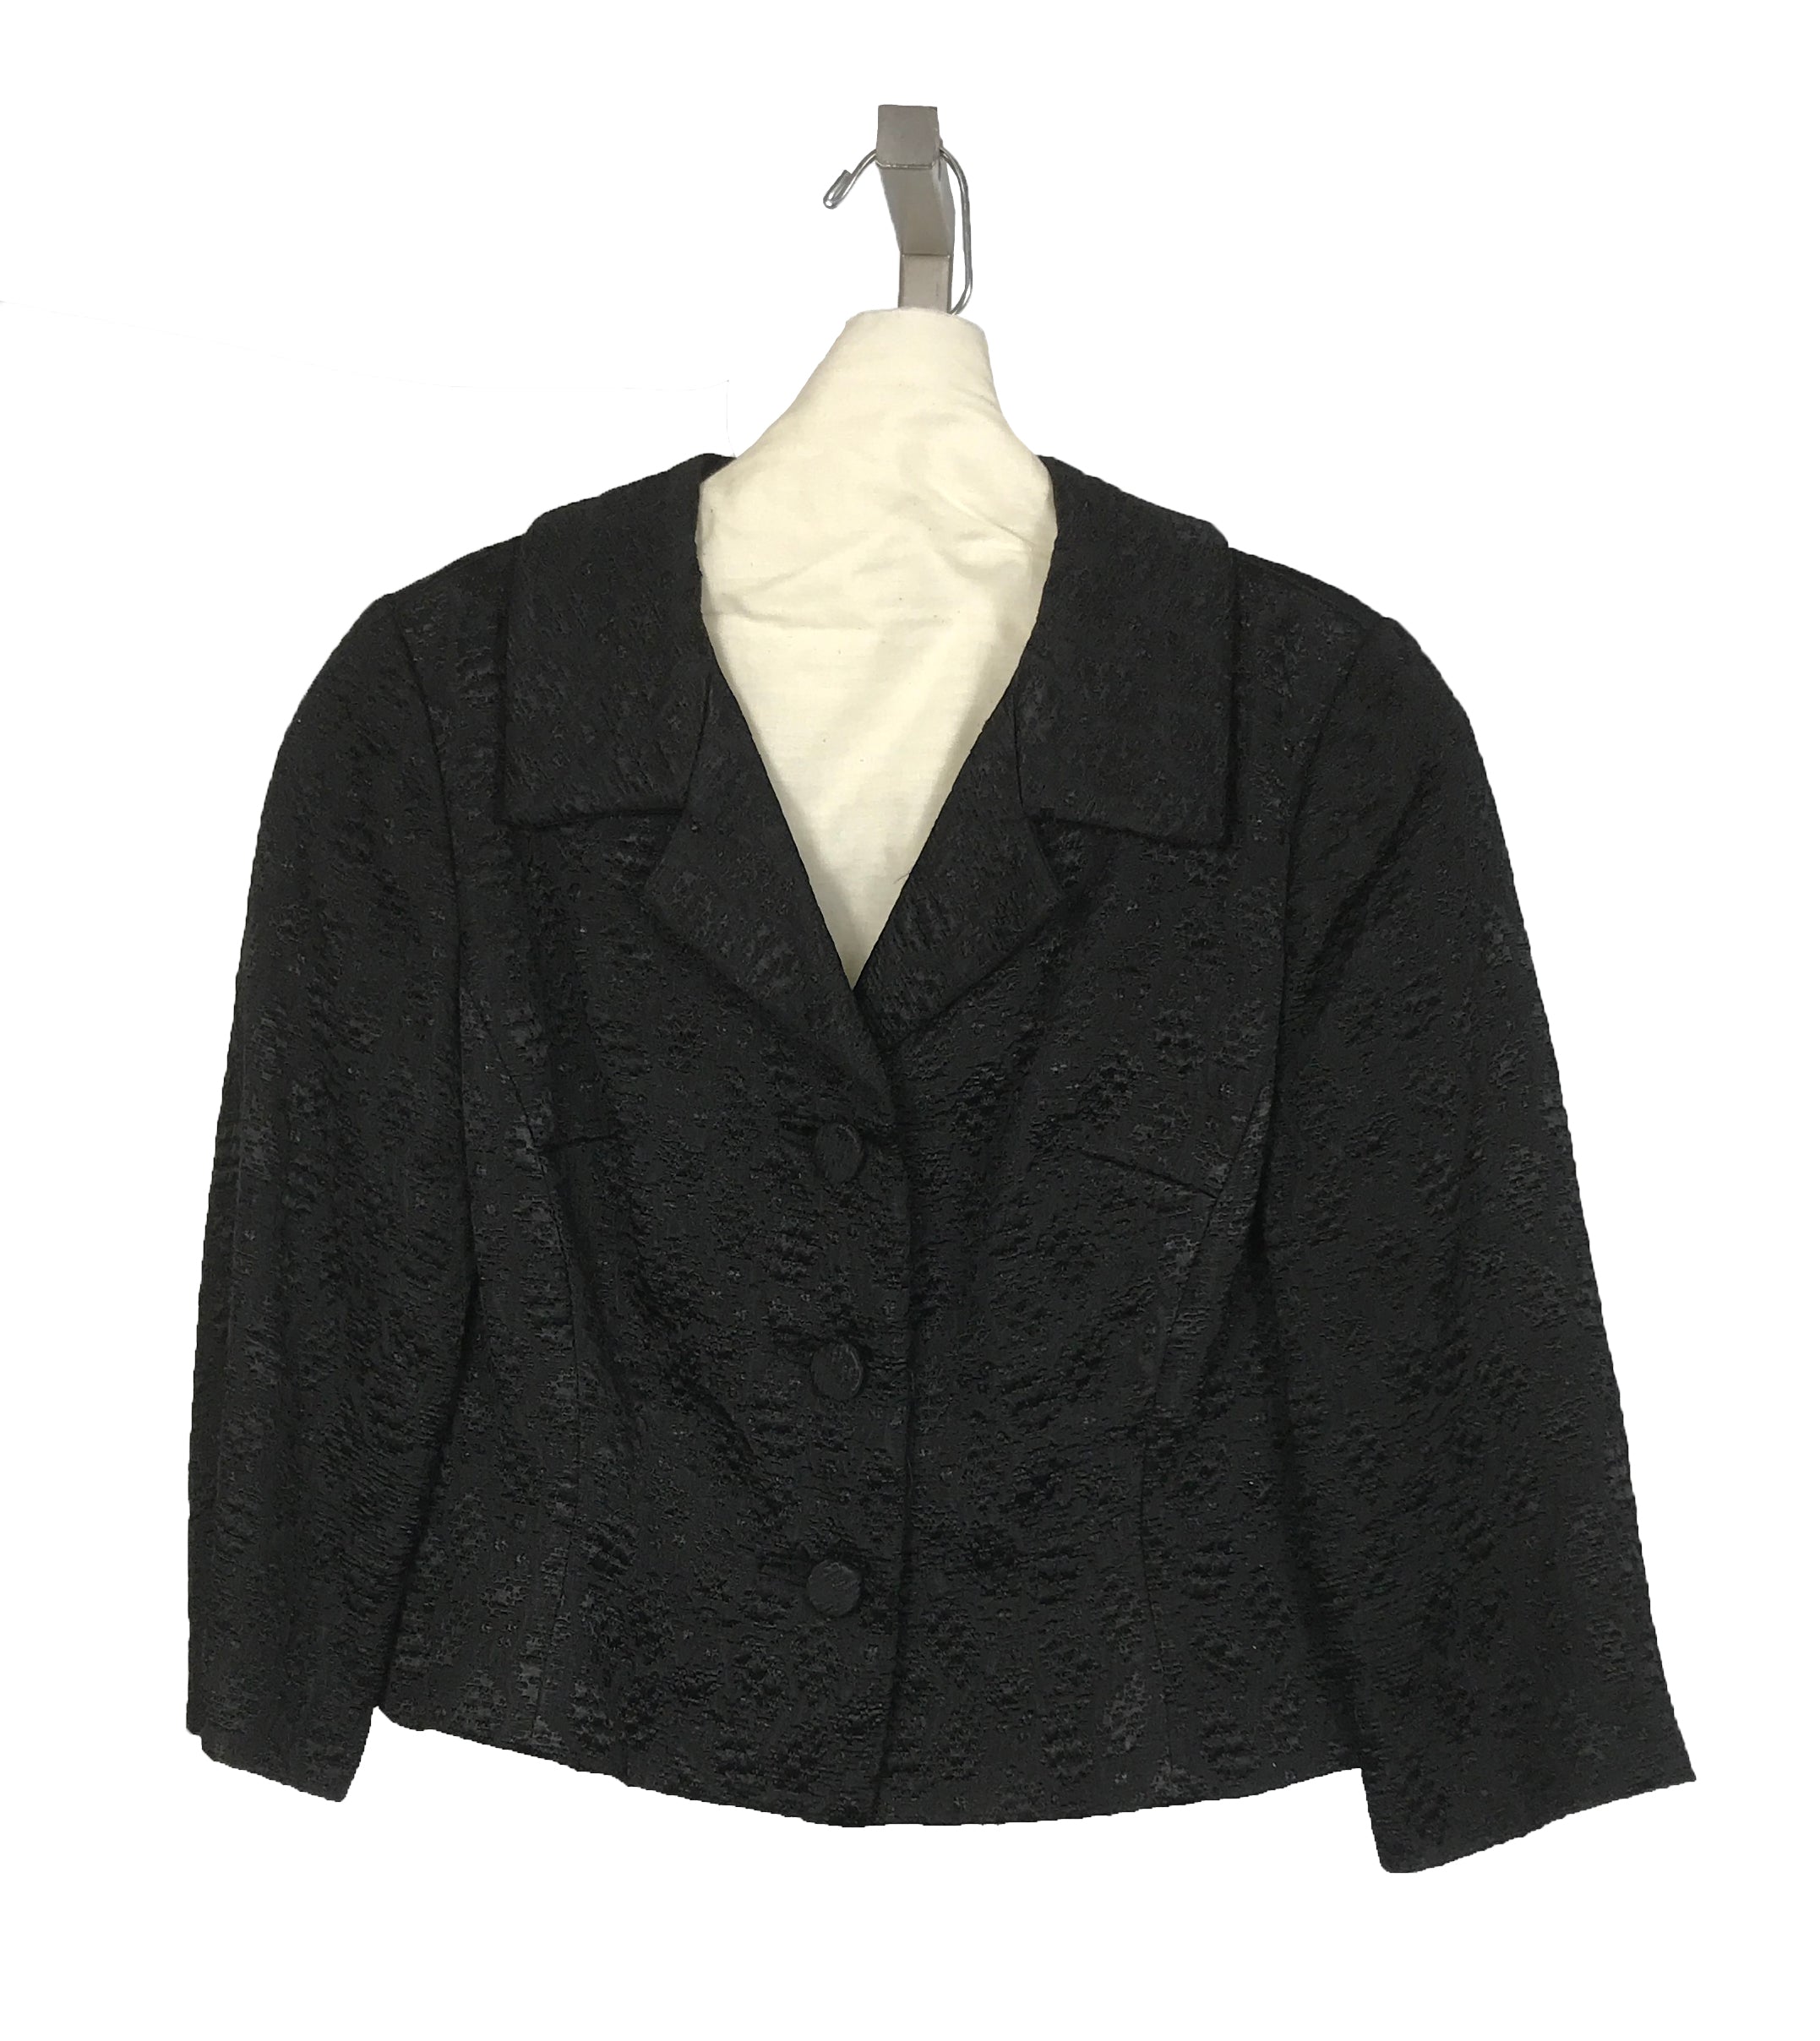 Vintage Milgrim Black Skirt Suit